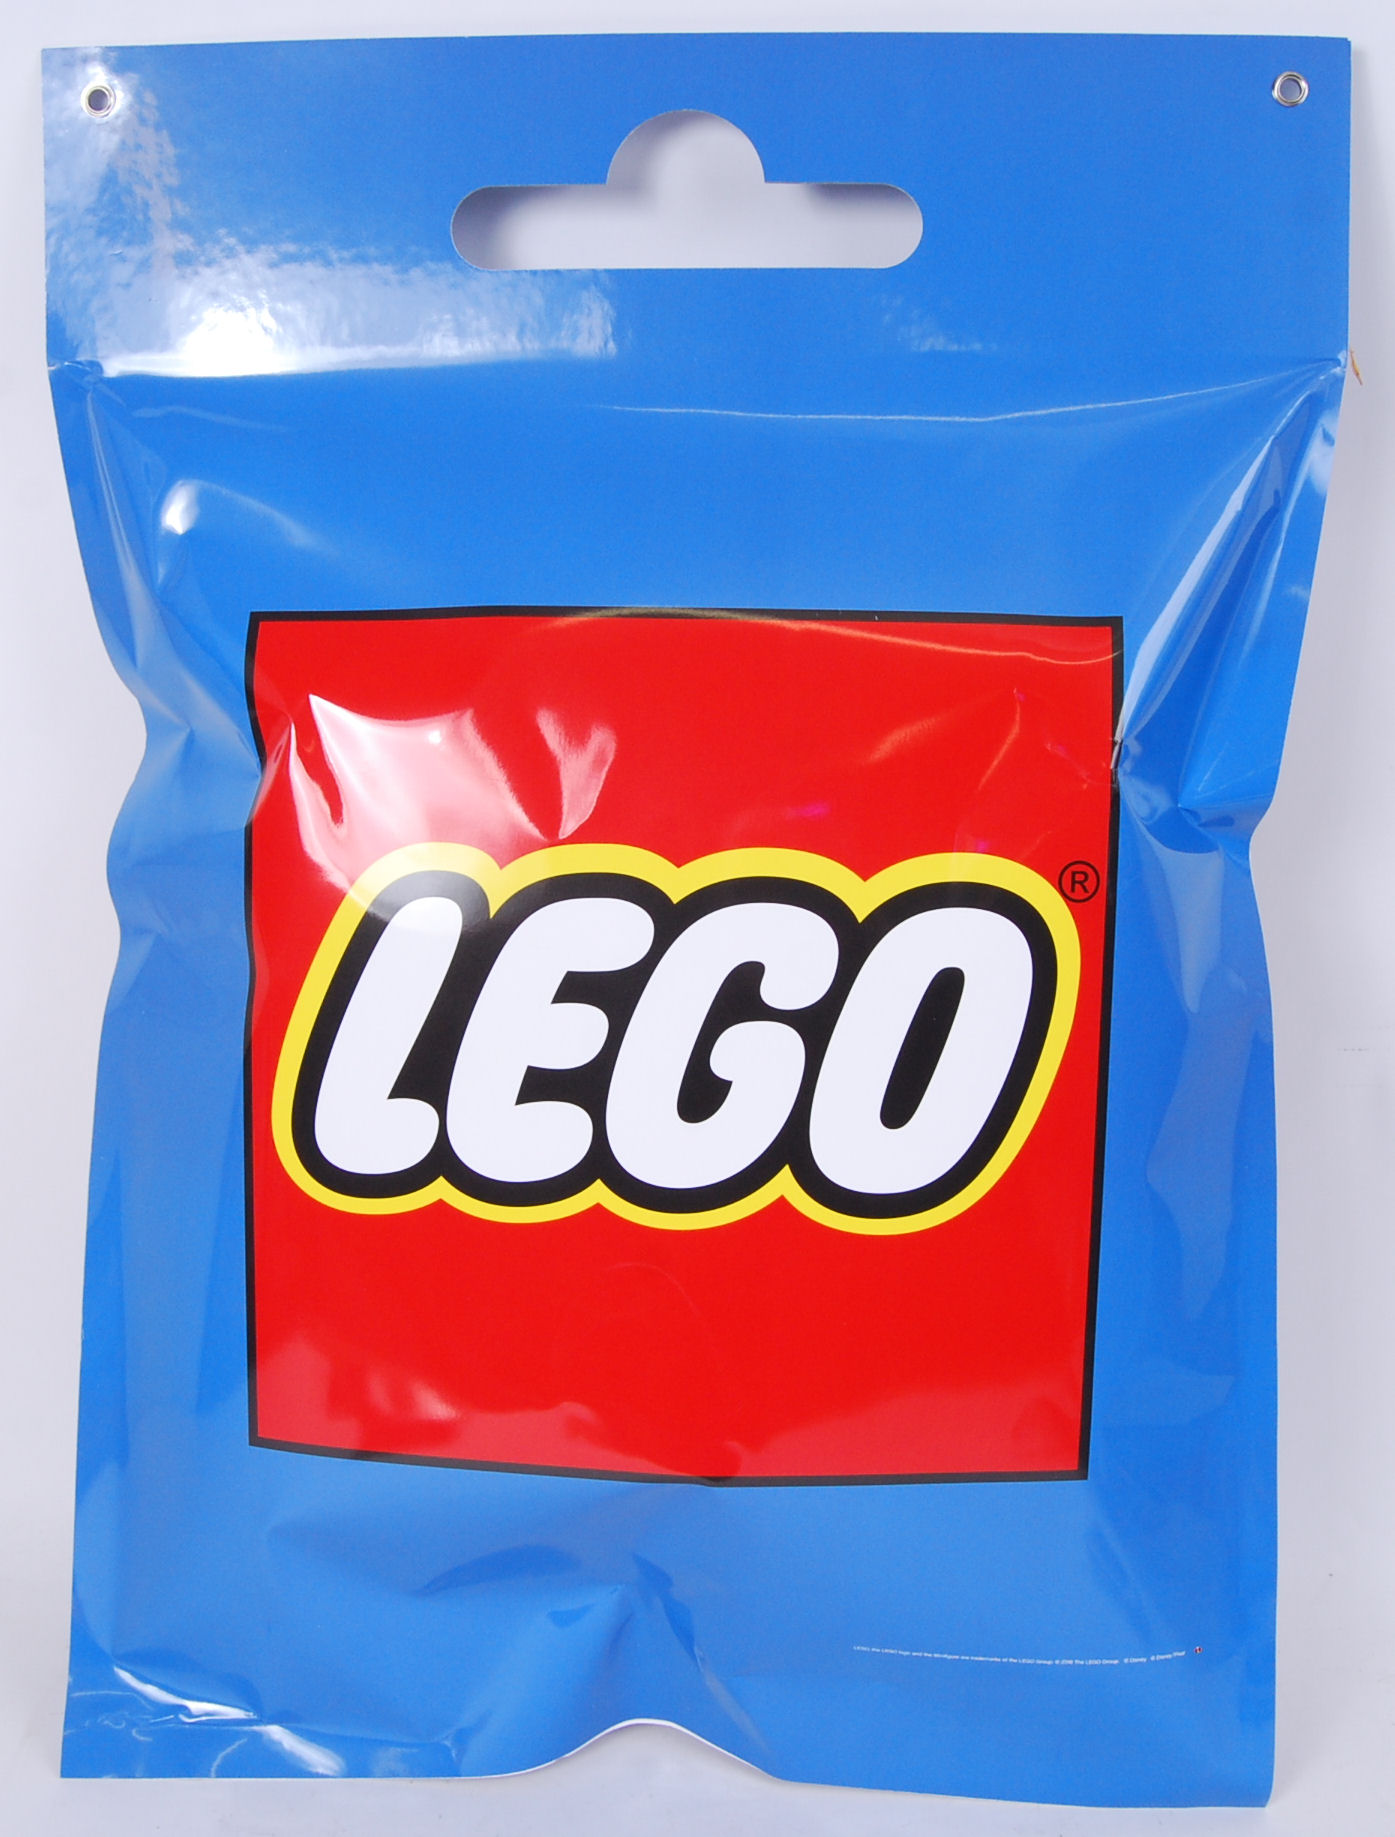 LEGO - Image 2 of 2